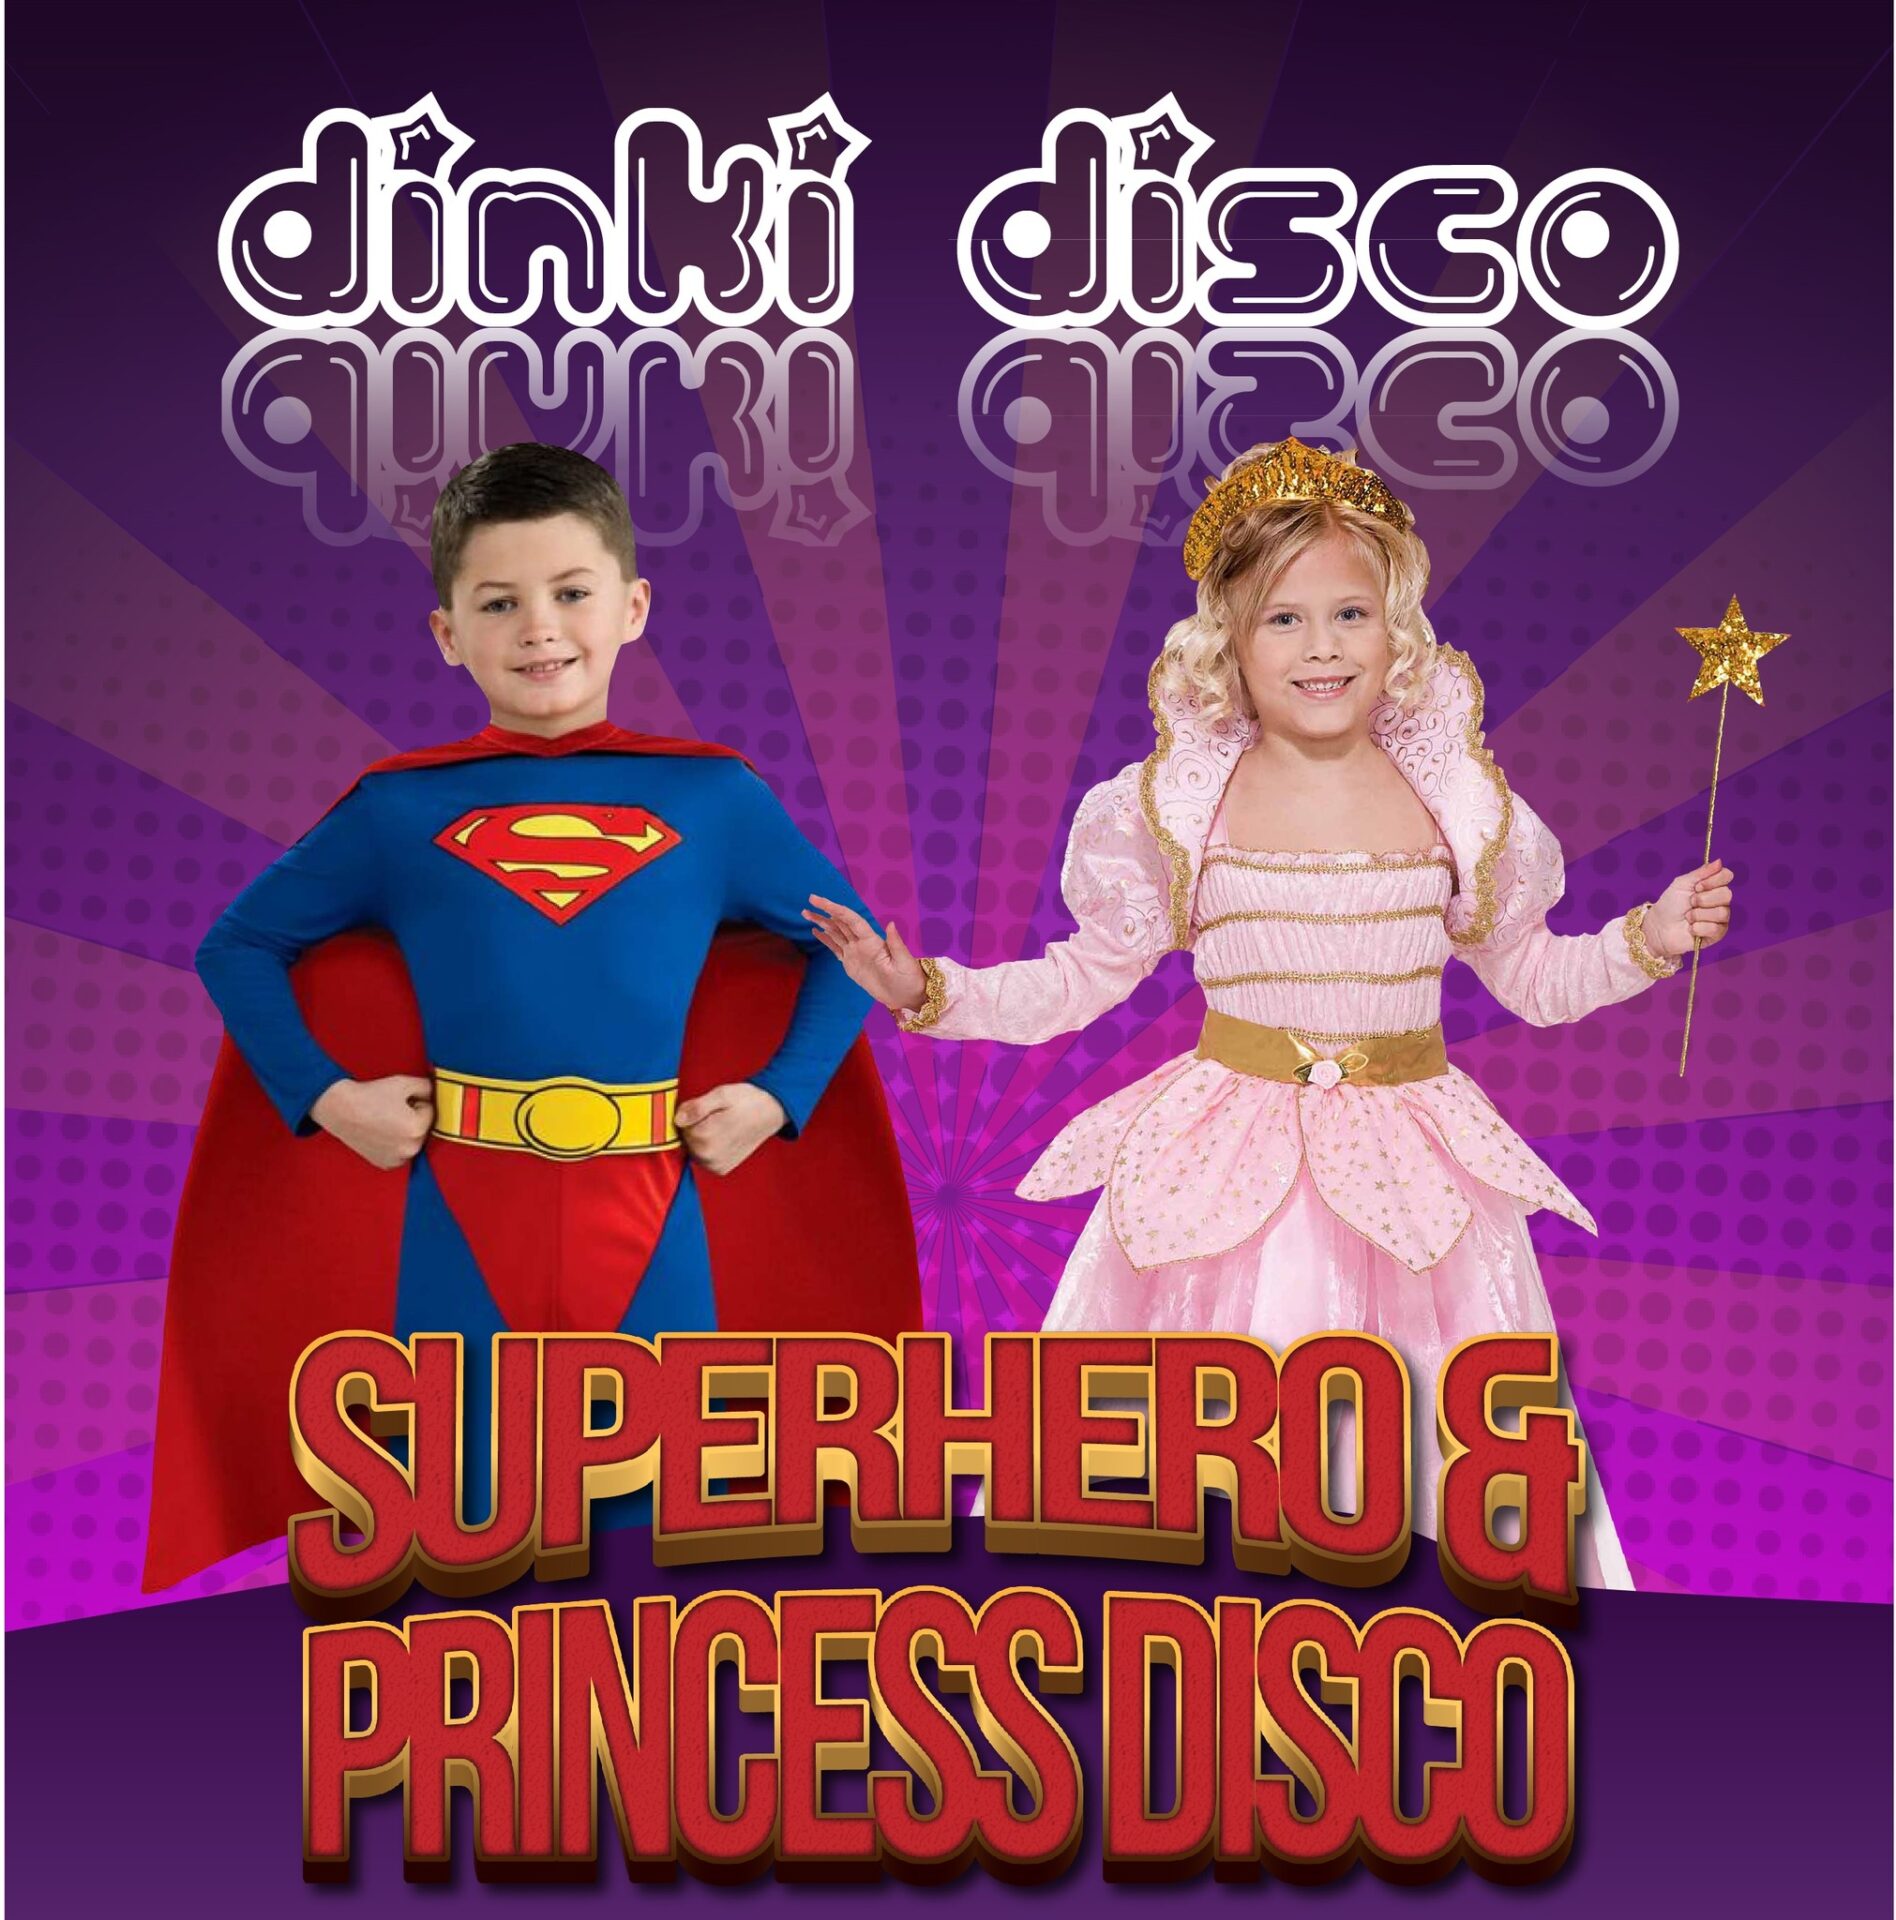 Superhero and Princess Disco